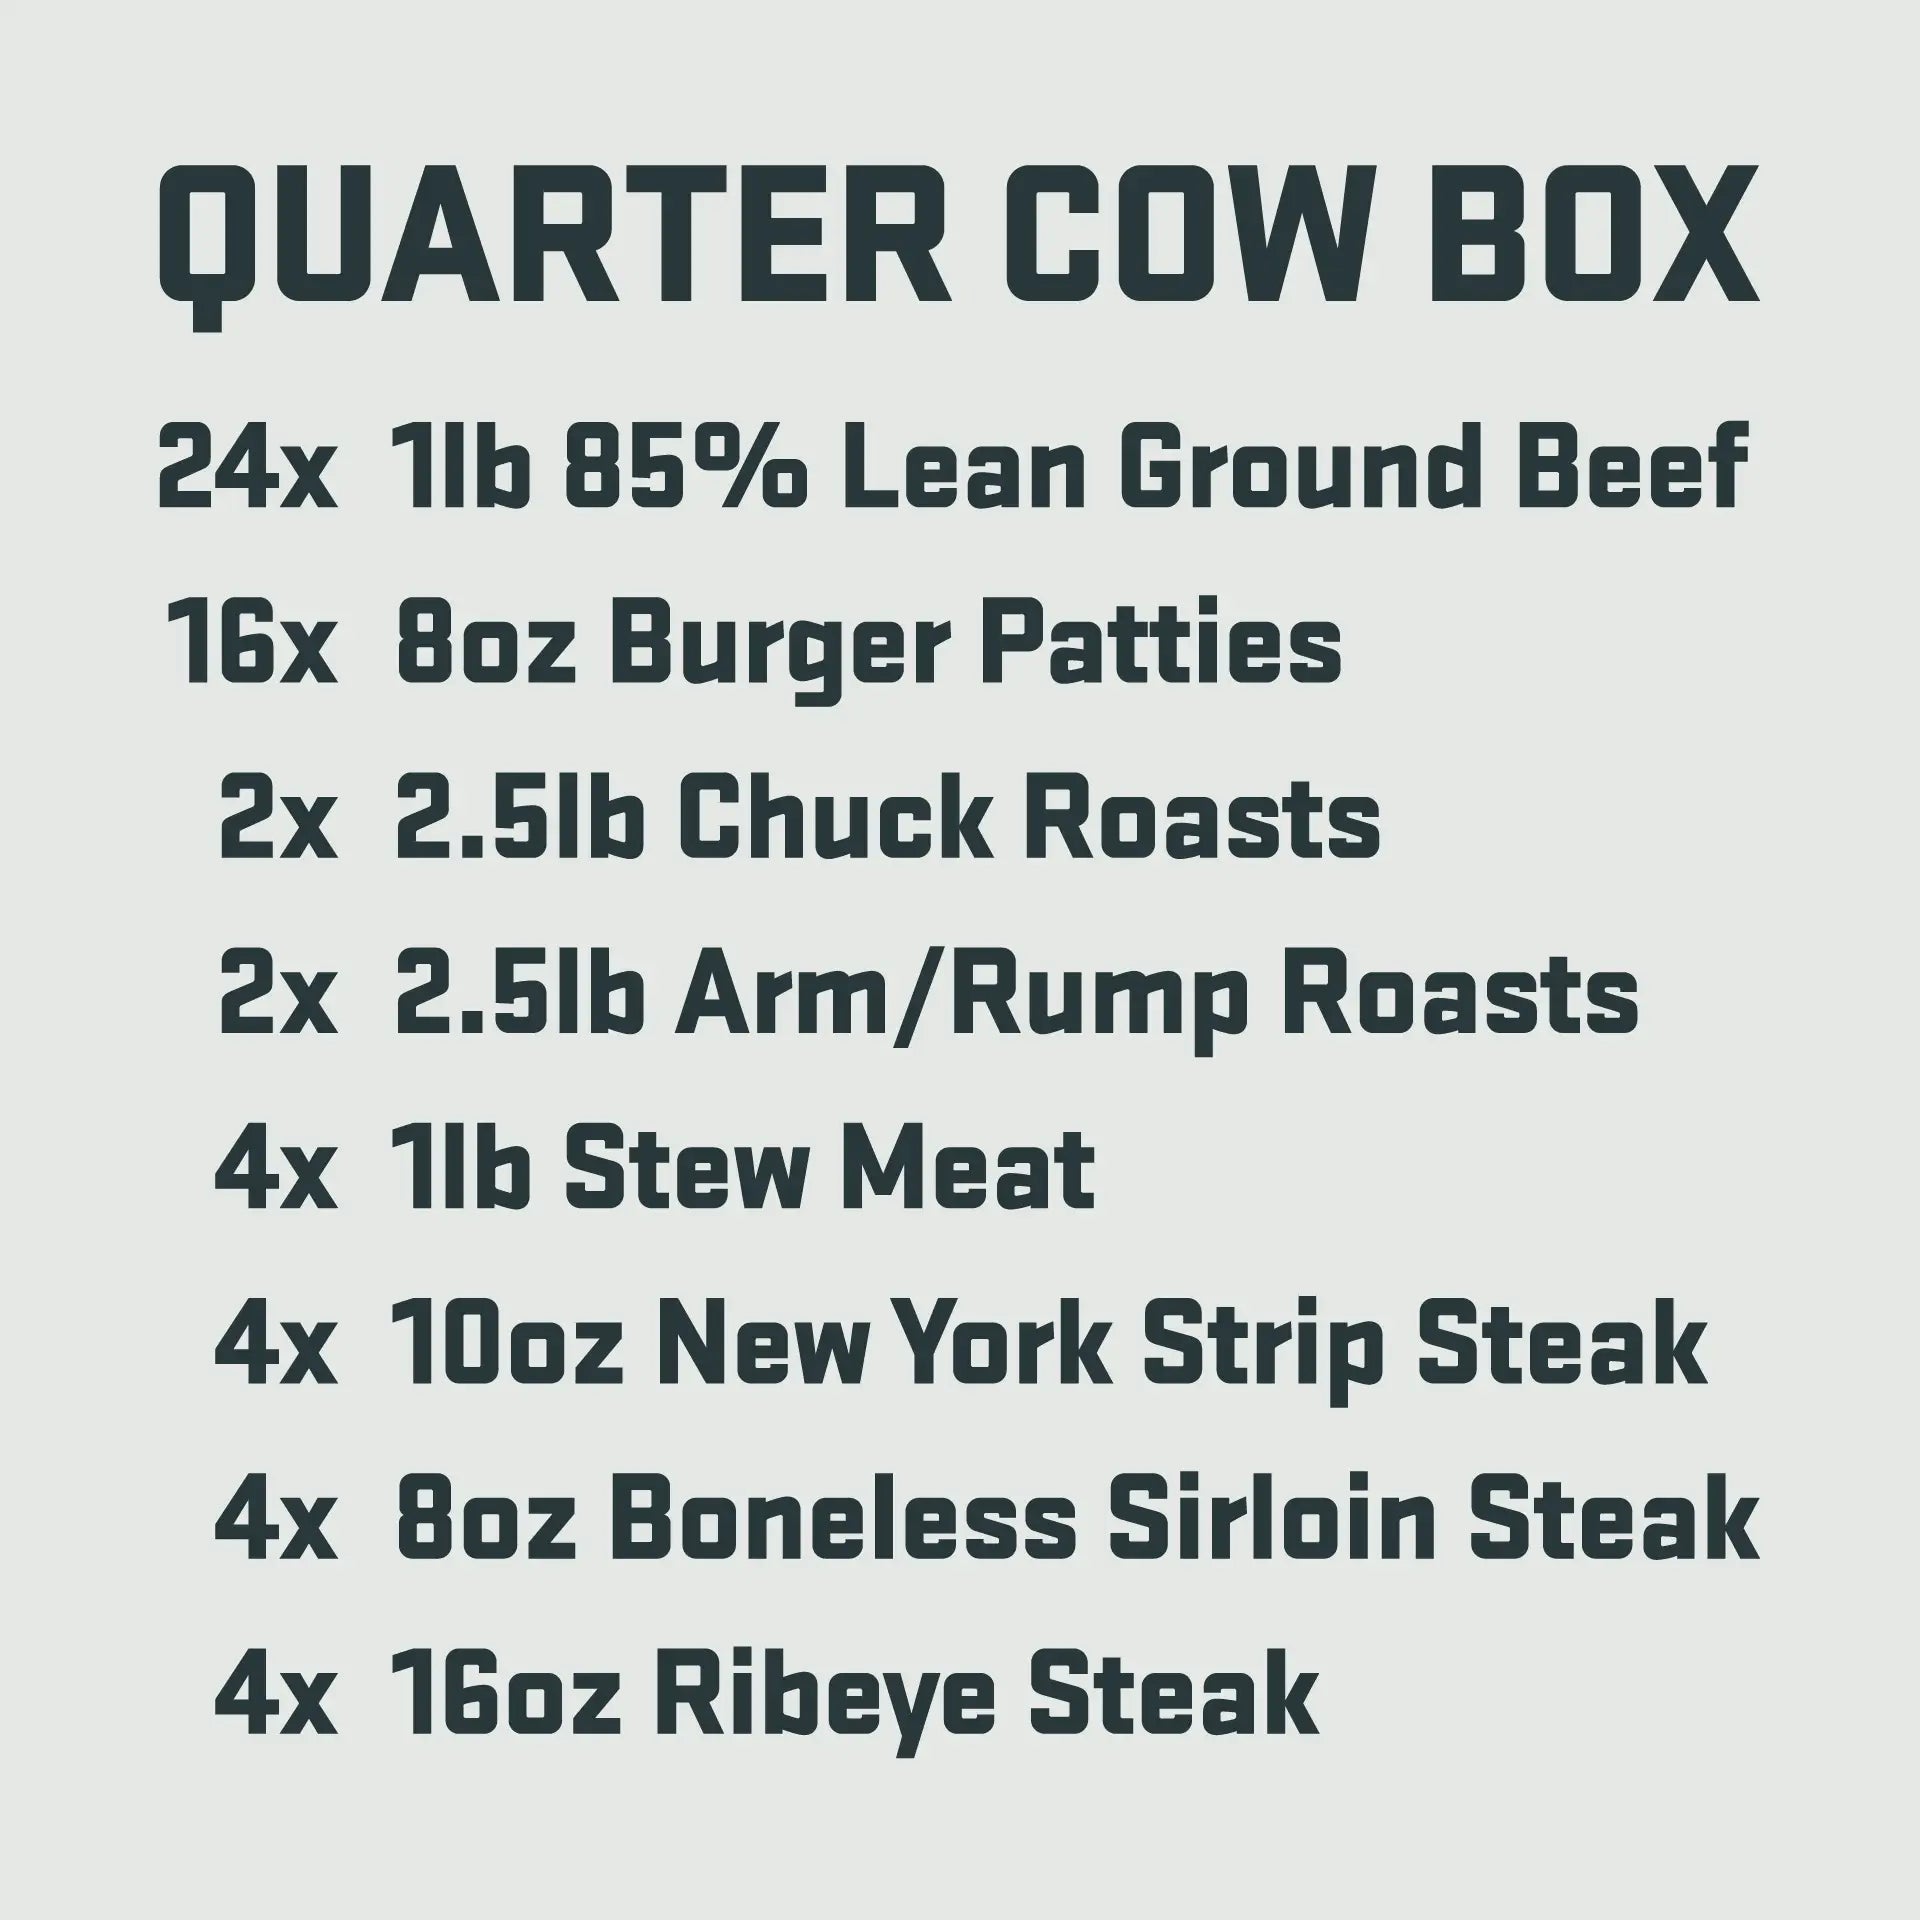 Quarter Cow Box